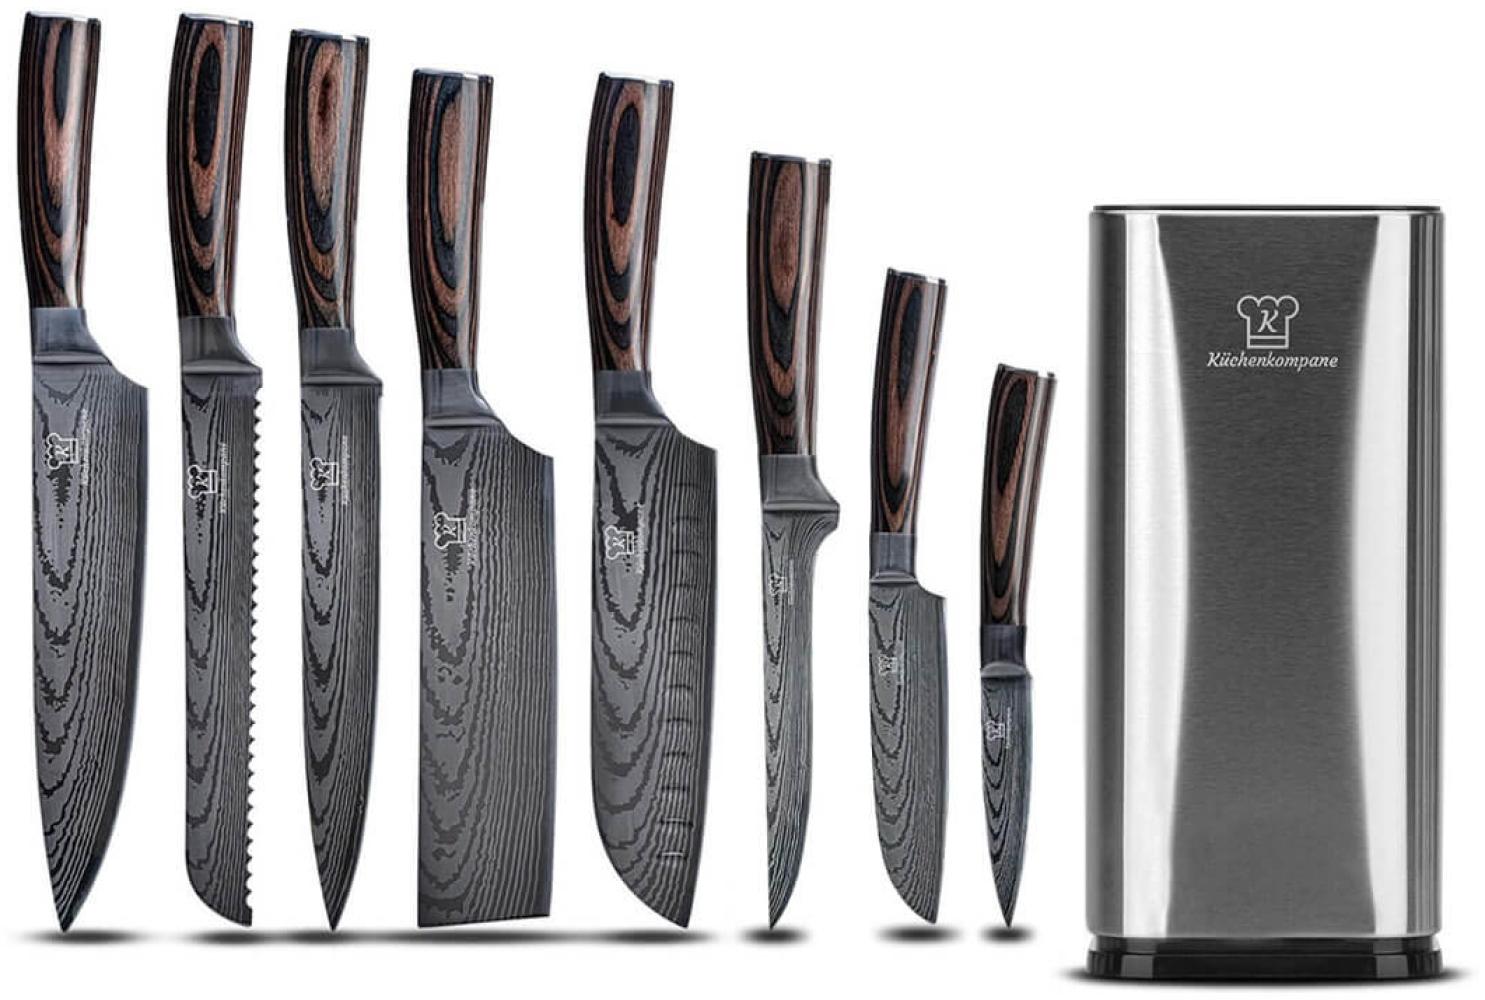 Professionelles Edelstahl Messerset mit Edelstahl Messerblock - 8-teiliges Küchenmesser Set - rostfrei & scharf - Designed in Germany Bild 1